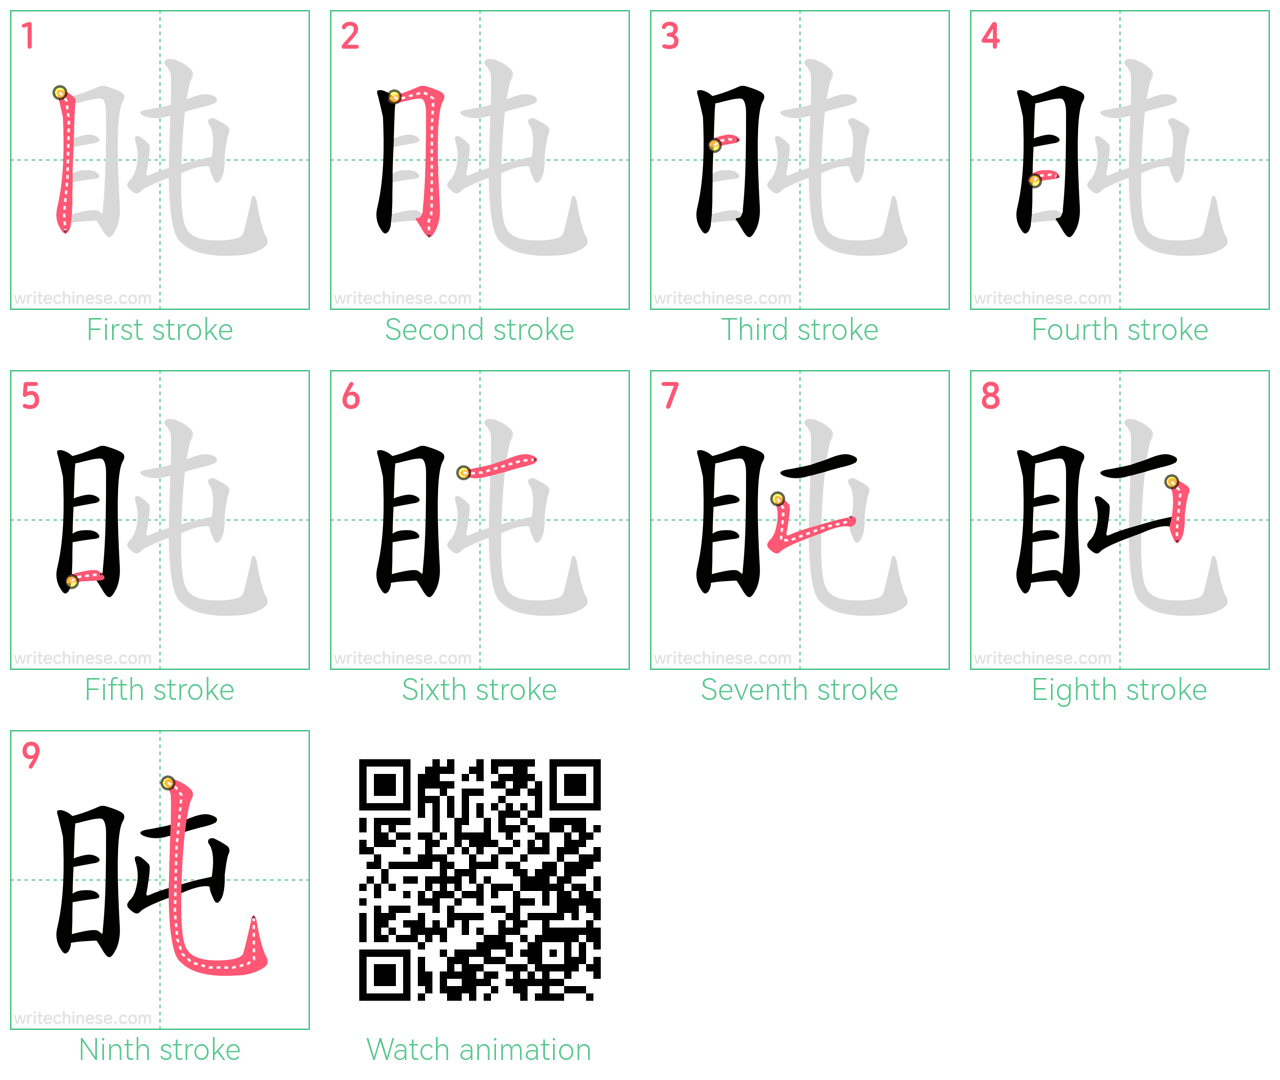 盹 step-by-step stroke order diagrams